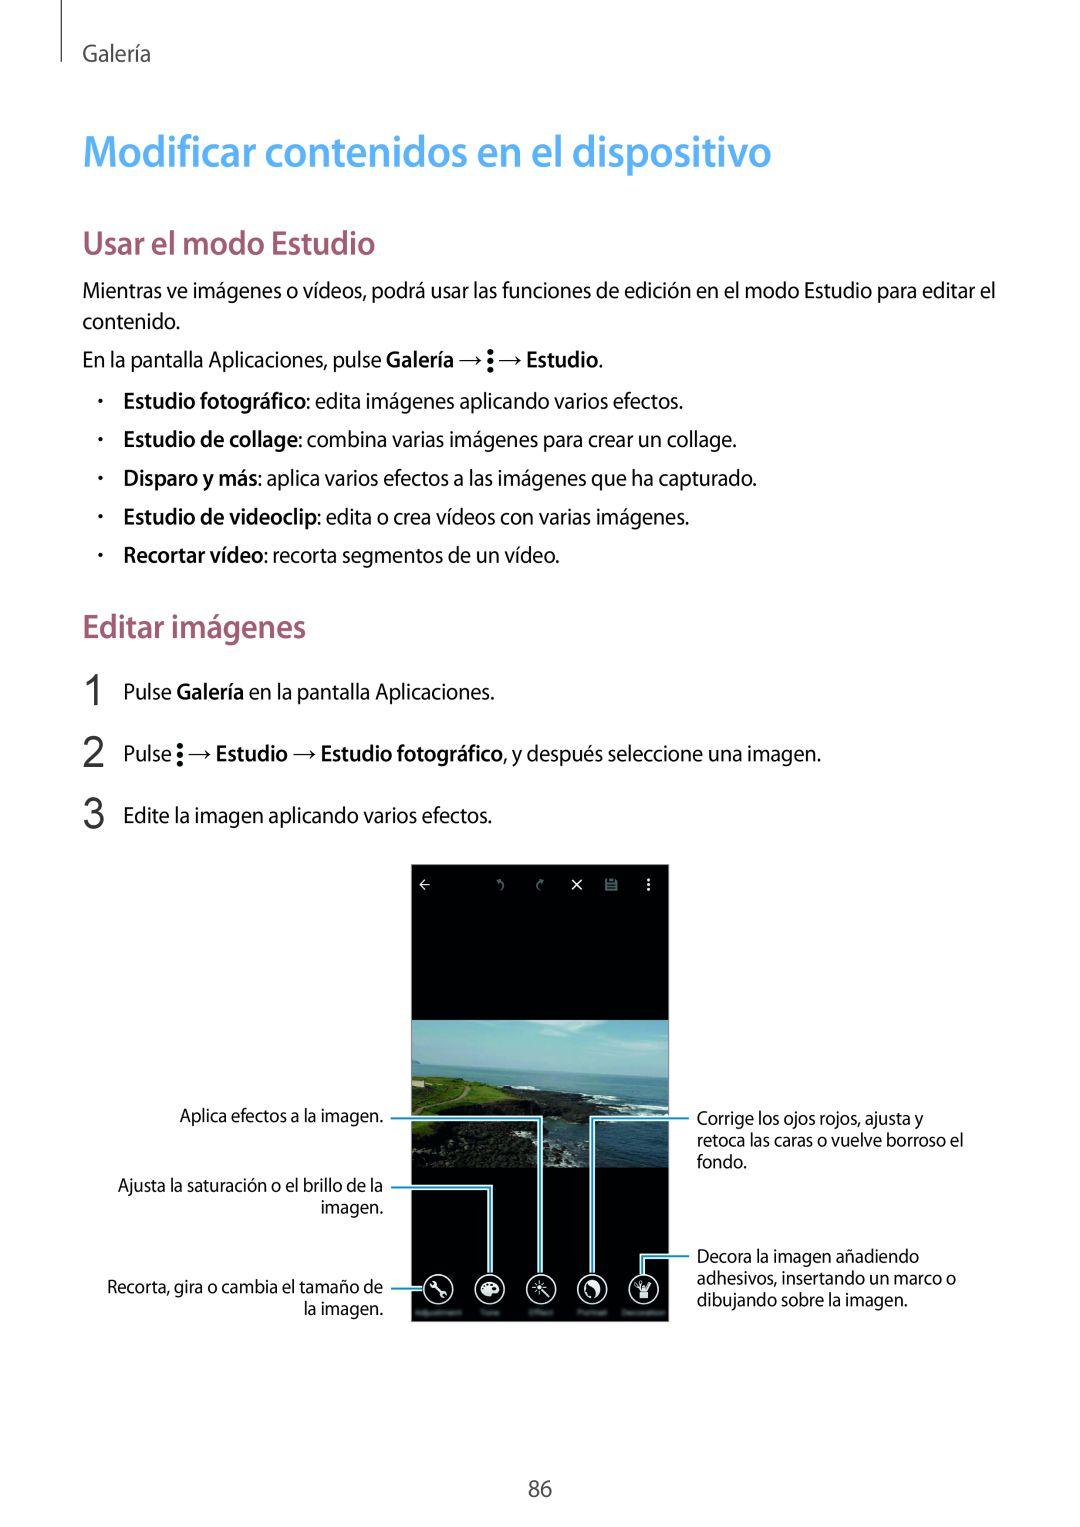 Samsung SM-G900FZWATPH manual Modificar contenidos en el dispositivo, Usar el modo Estudio, Editar imágenes, Galería 